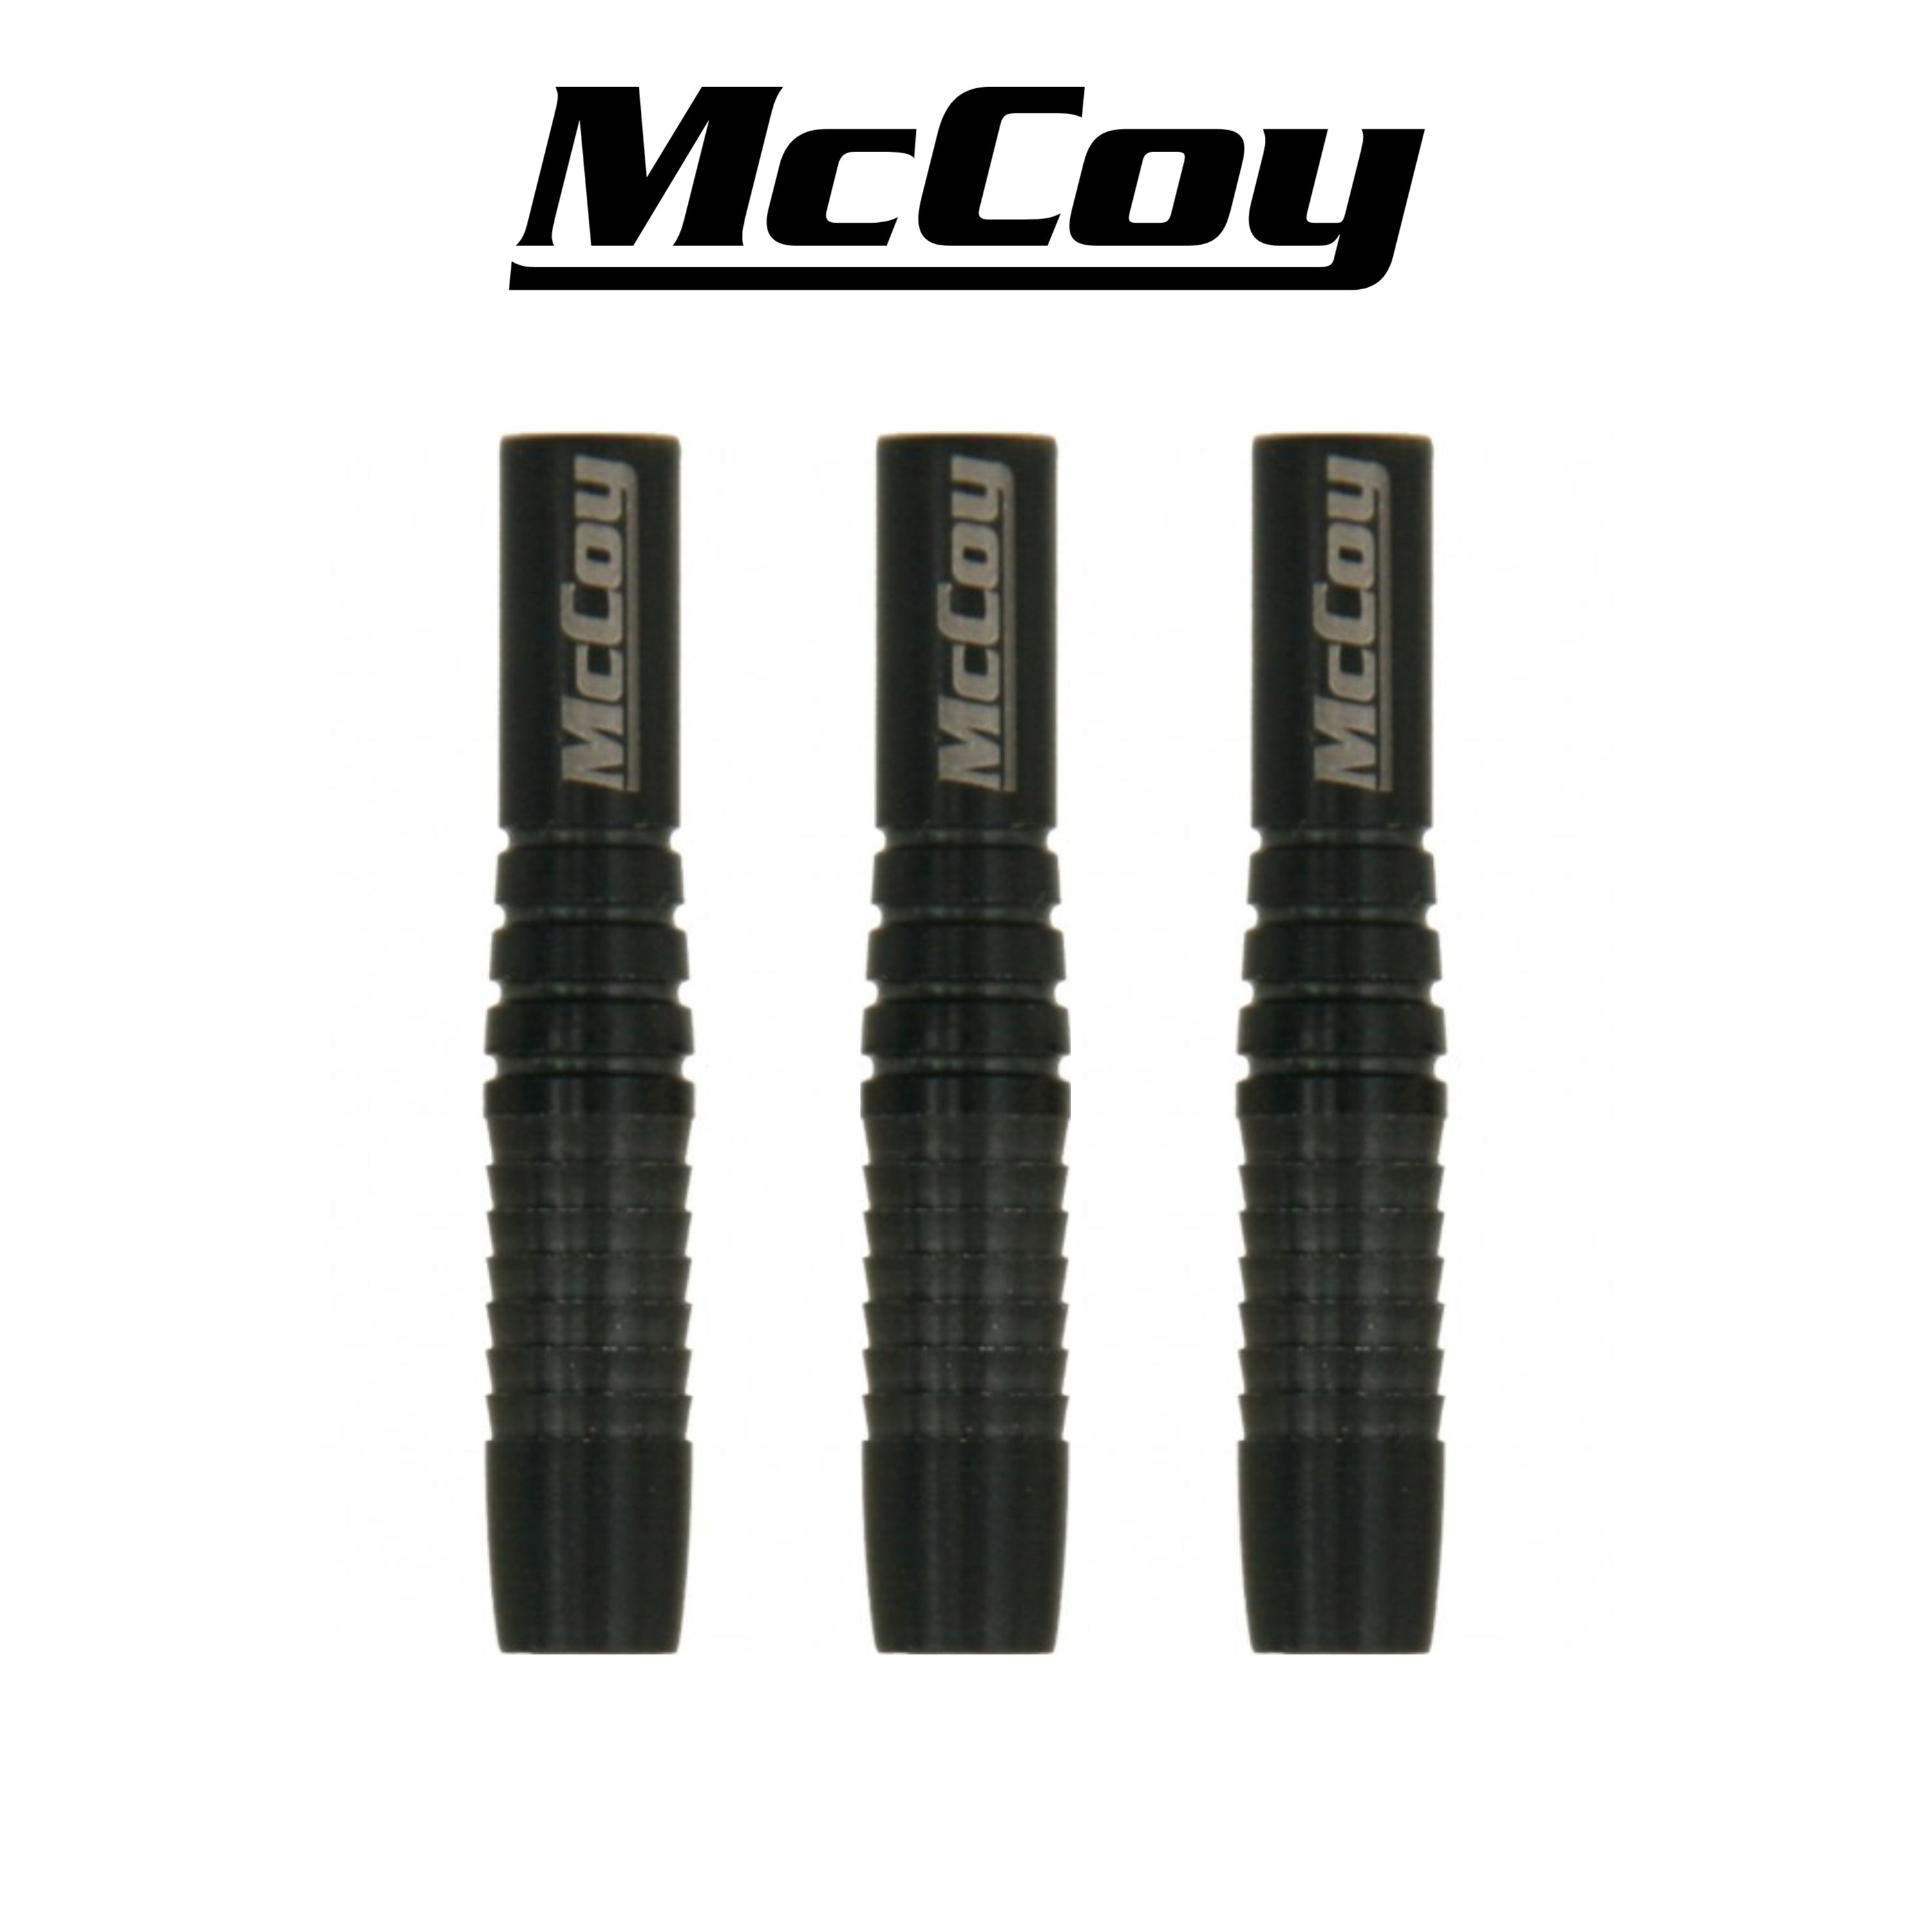 McCoy Extra - 90% Tungsten Softdartbarrels - Black